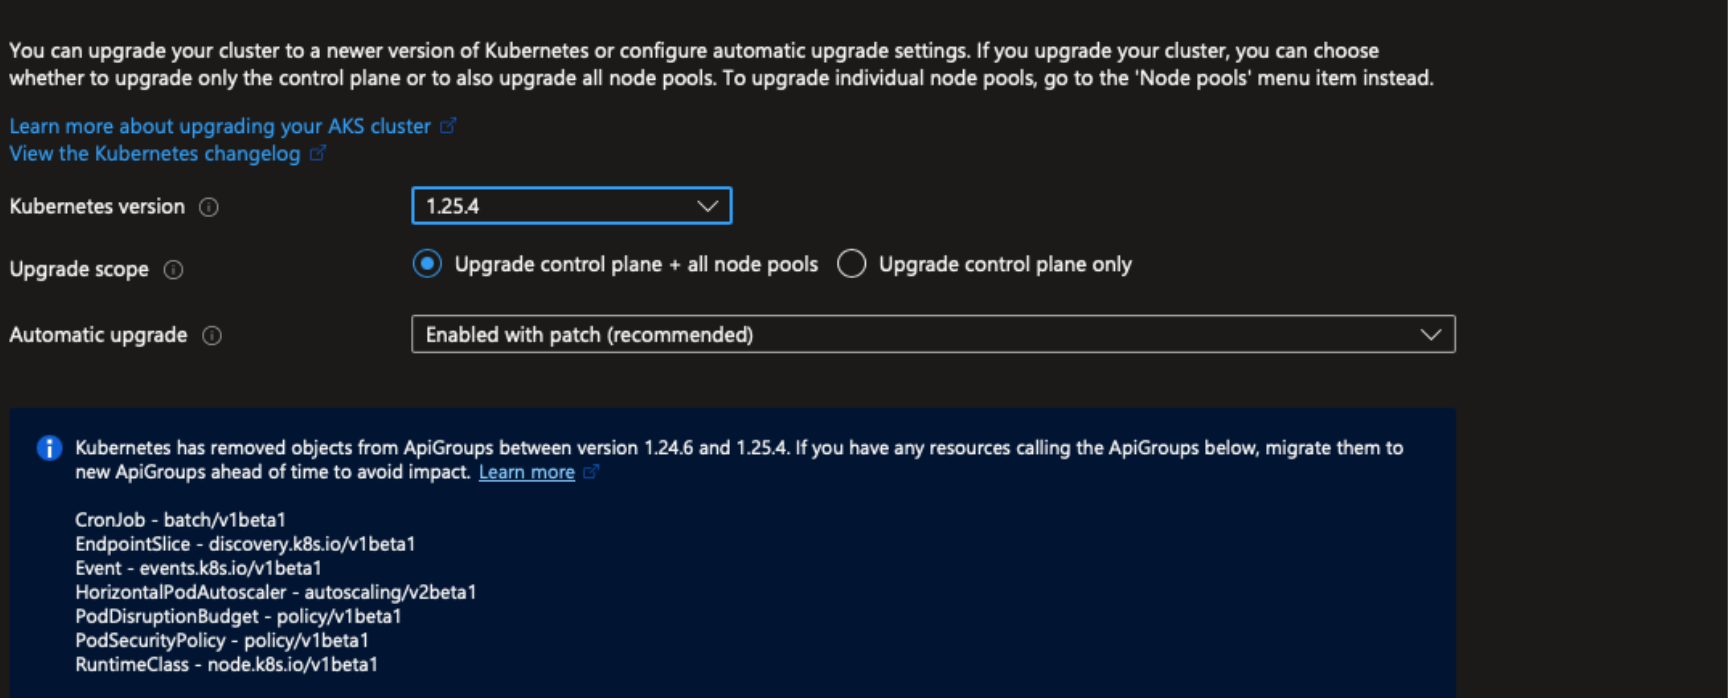 Captura de pantalla de la hoja de actualización de un clúster de AKS en Azure Portal. El campo de actualización automática muestra la opción 